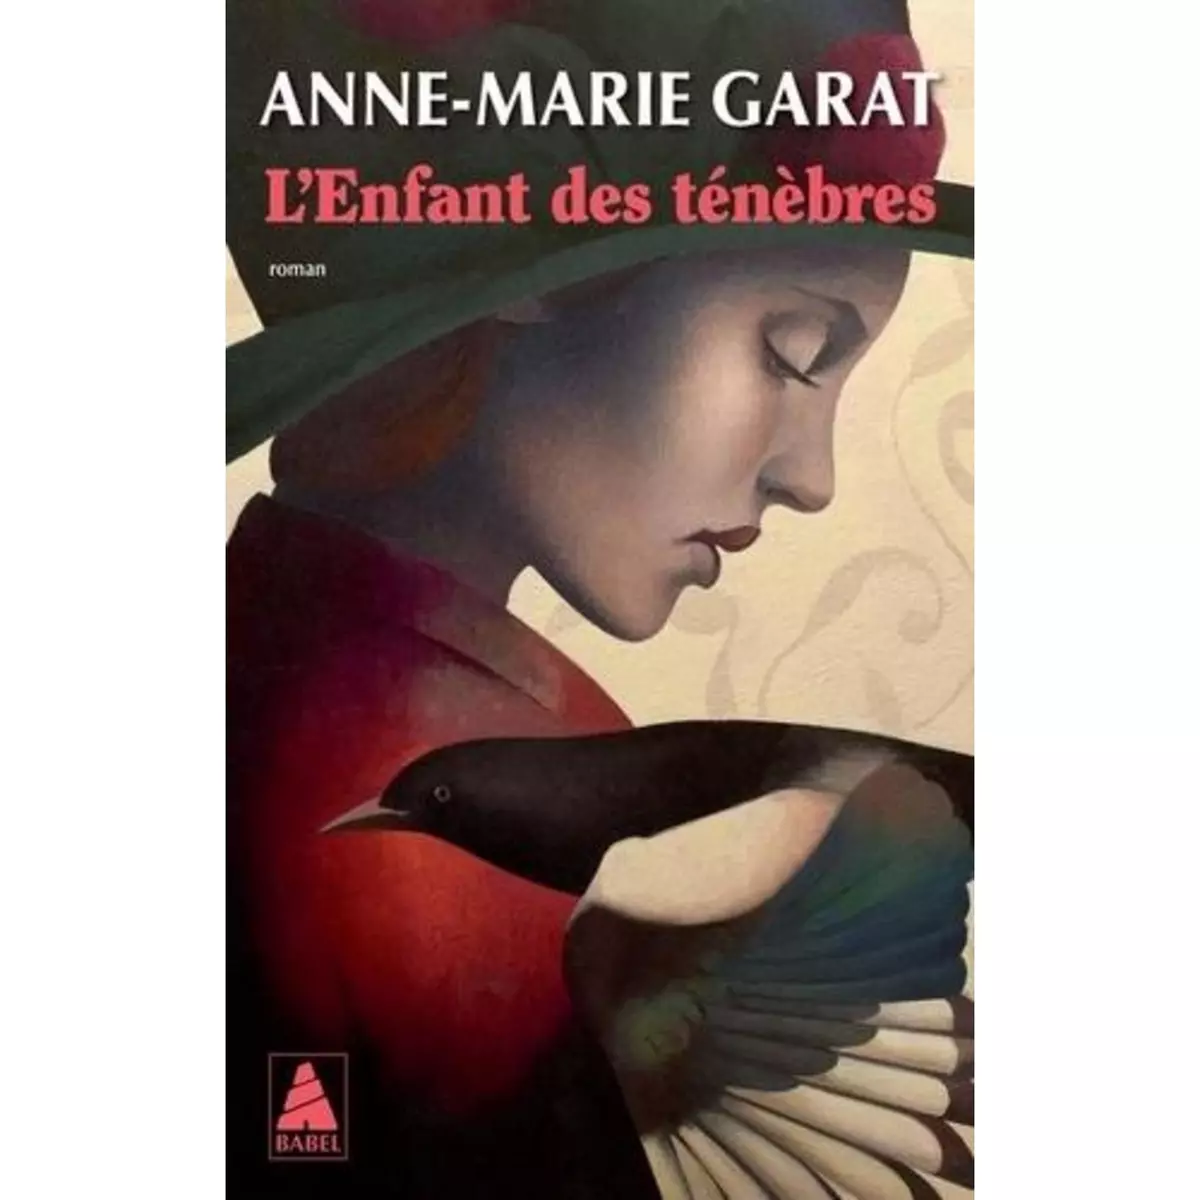  L'ENFANT DES TENEBRES, Garat Anne-Marie